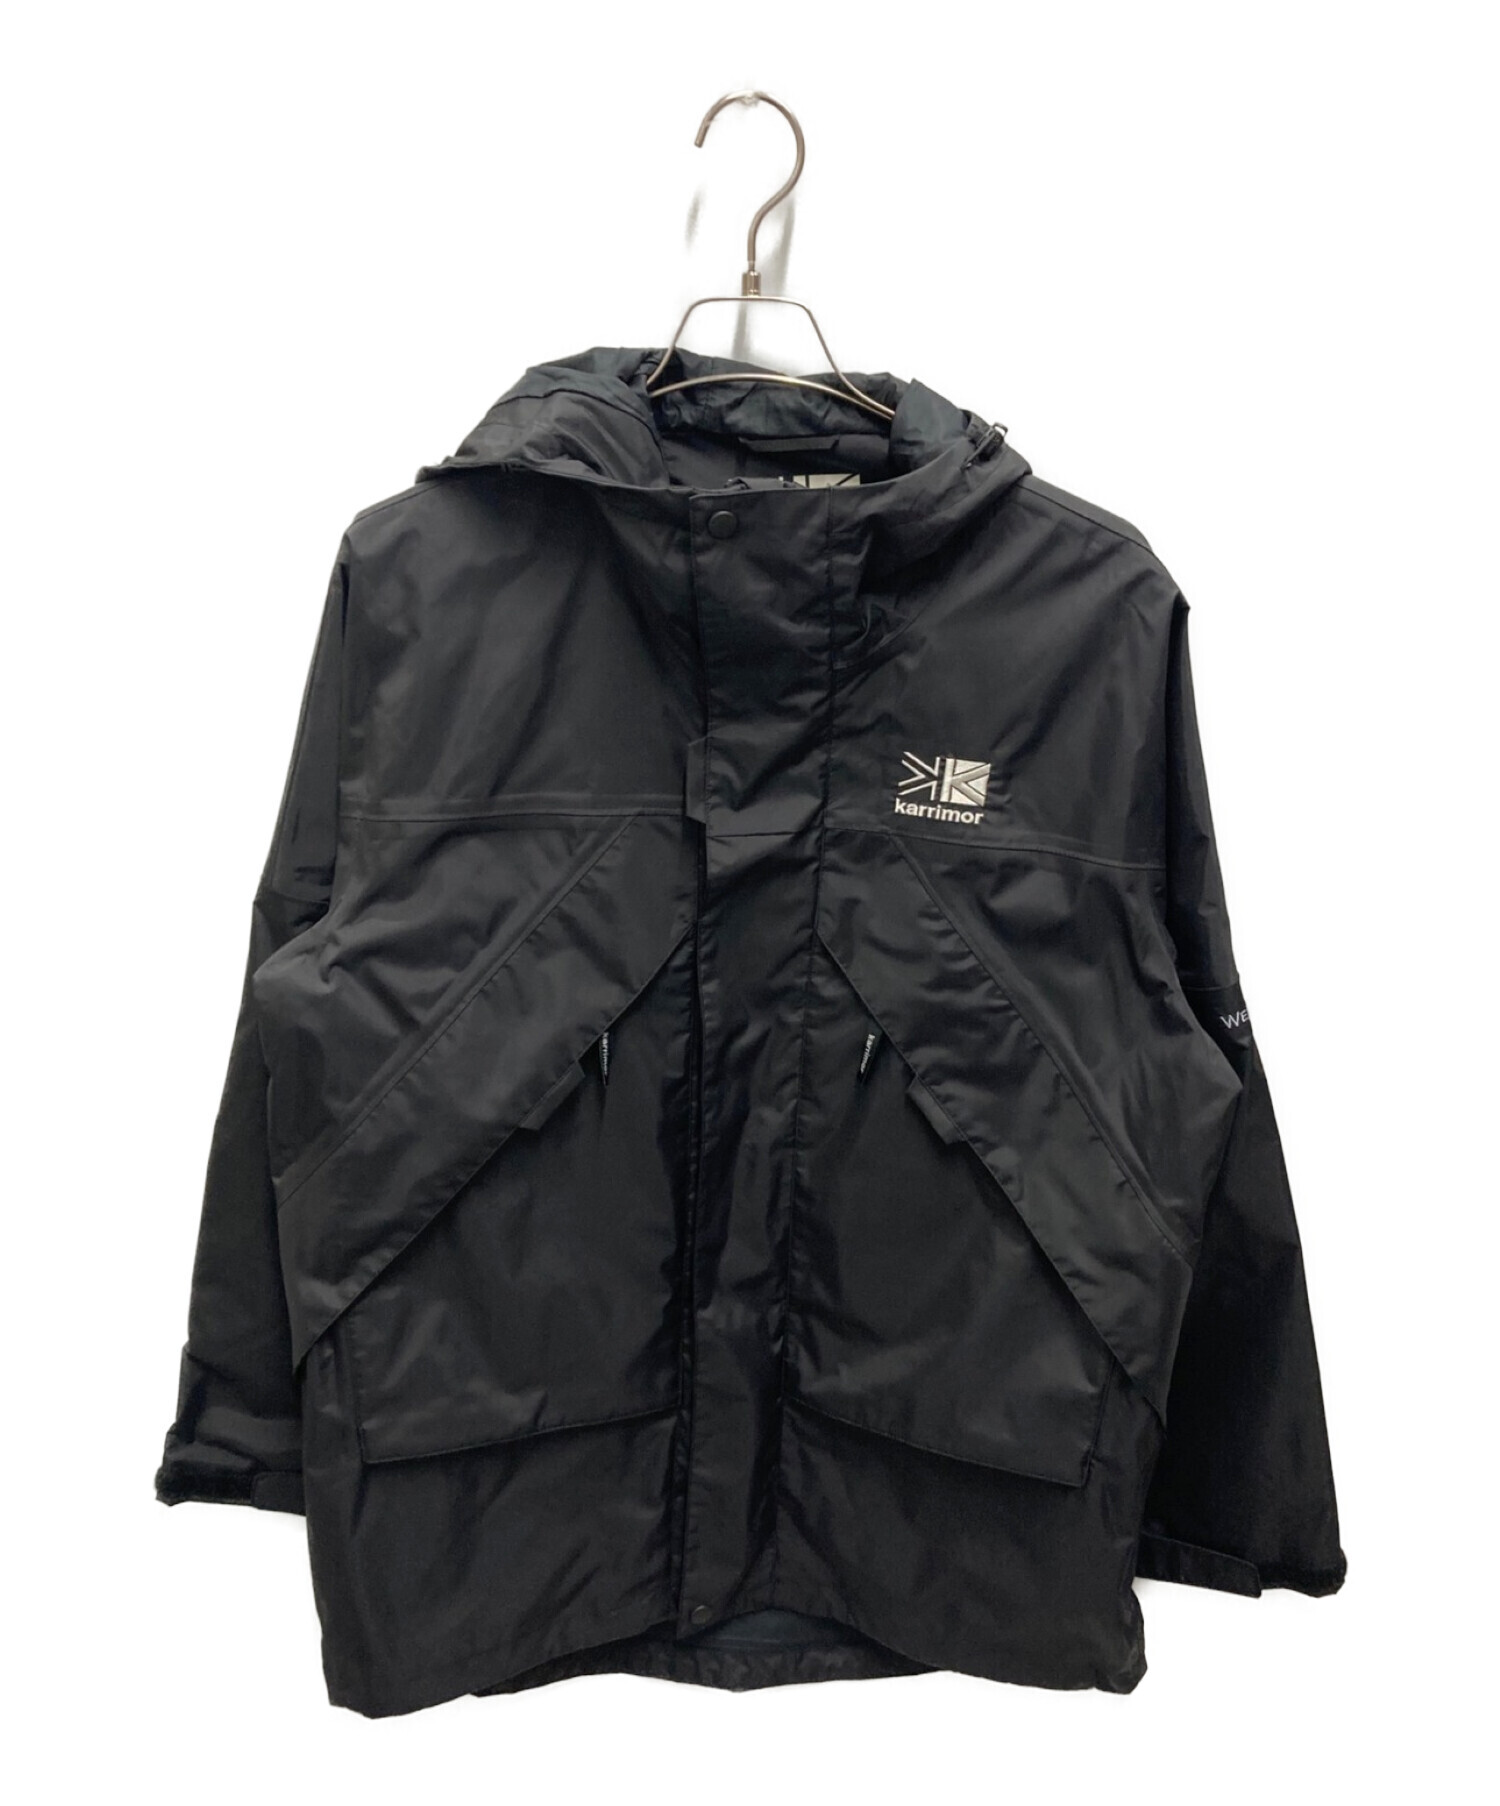 6,384円カリマー Edale jacket